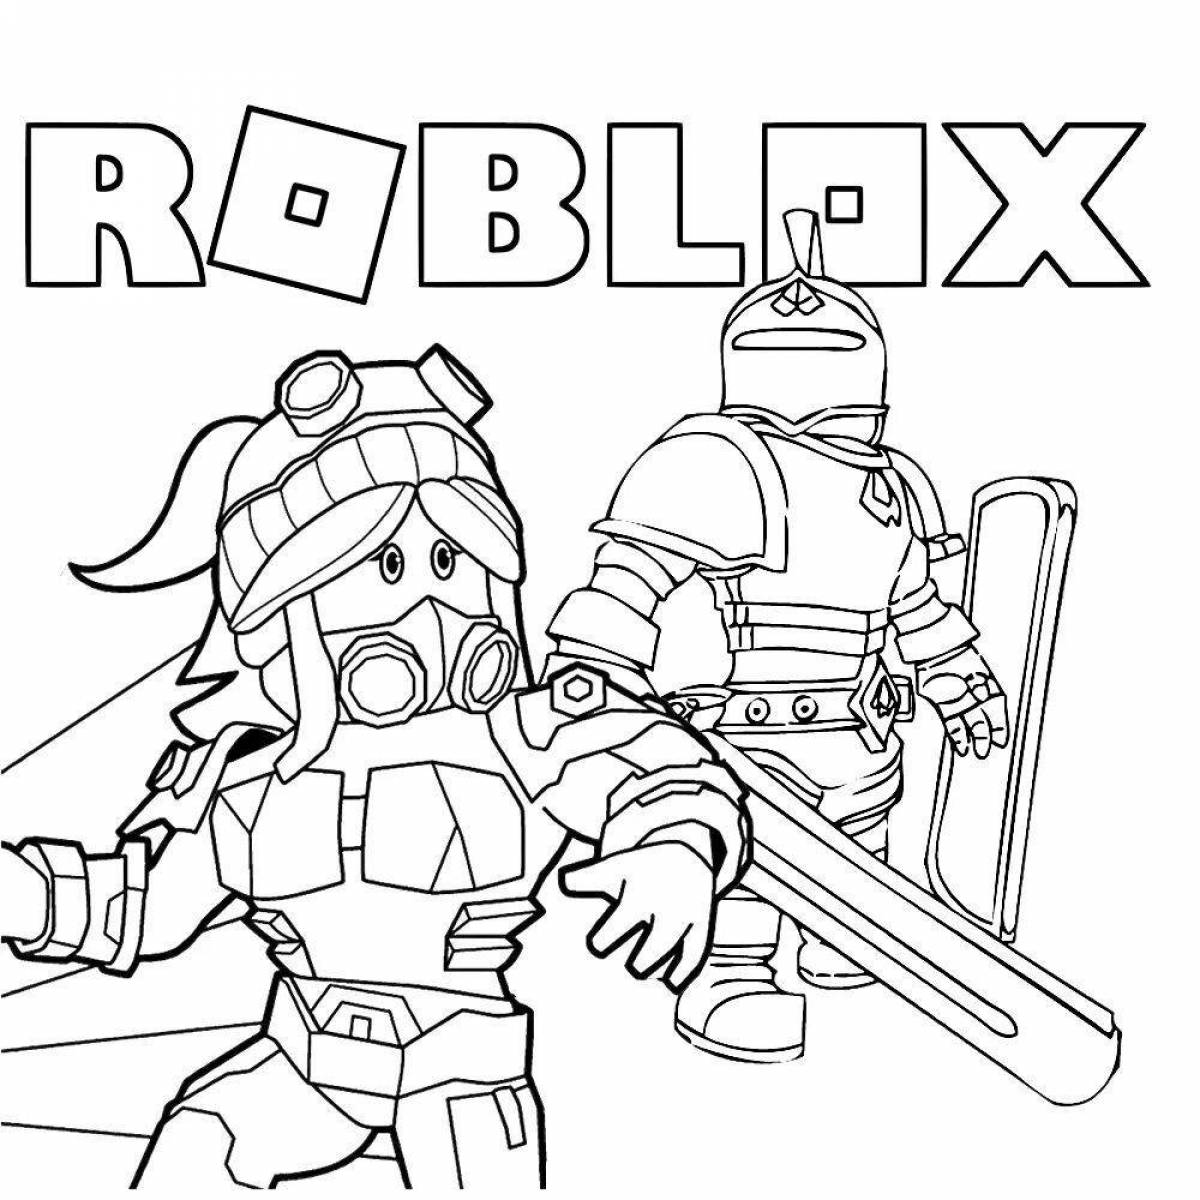 Roblox robzi intensive coloring